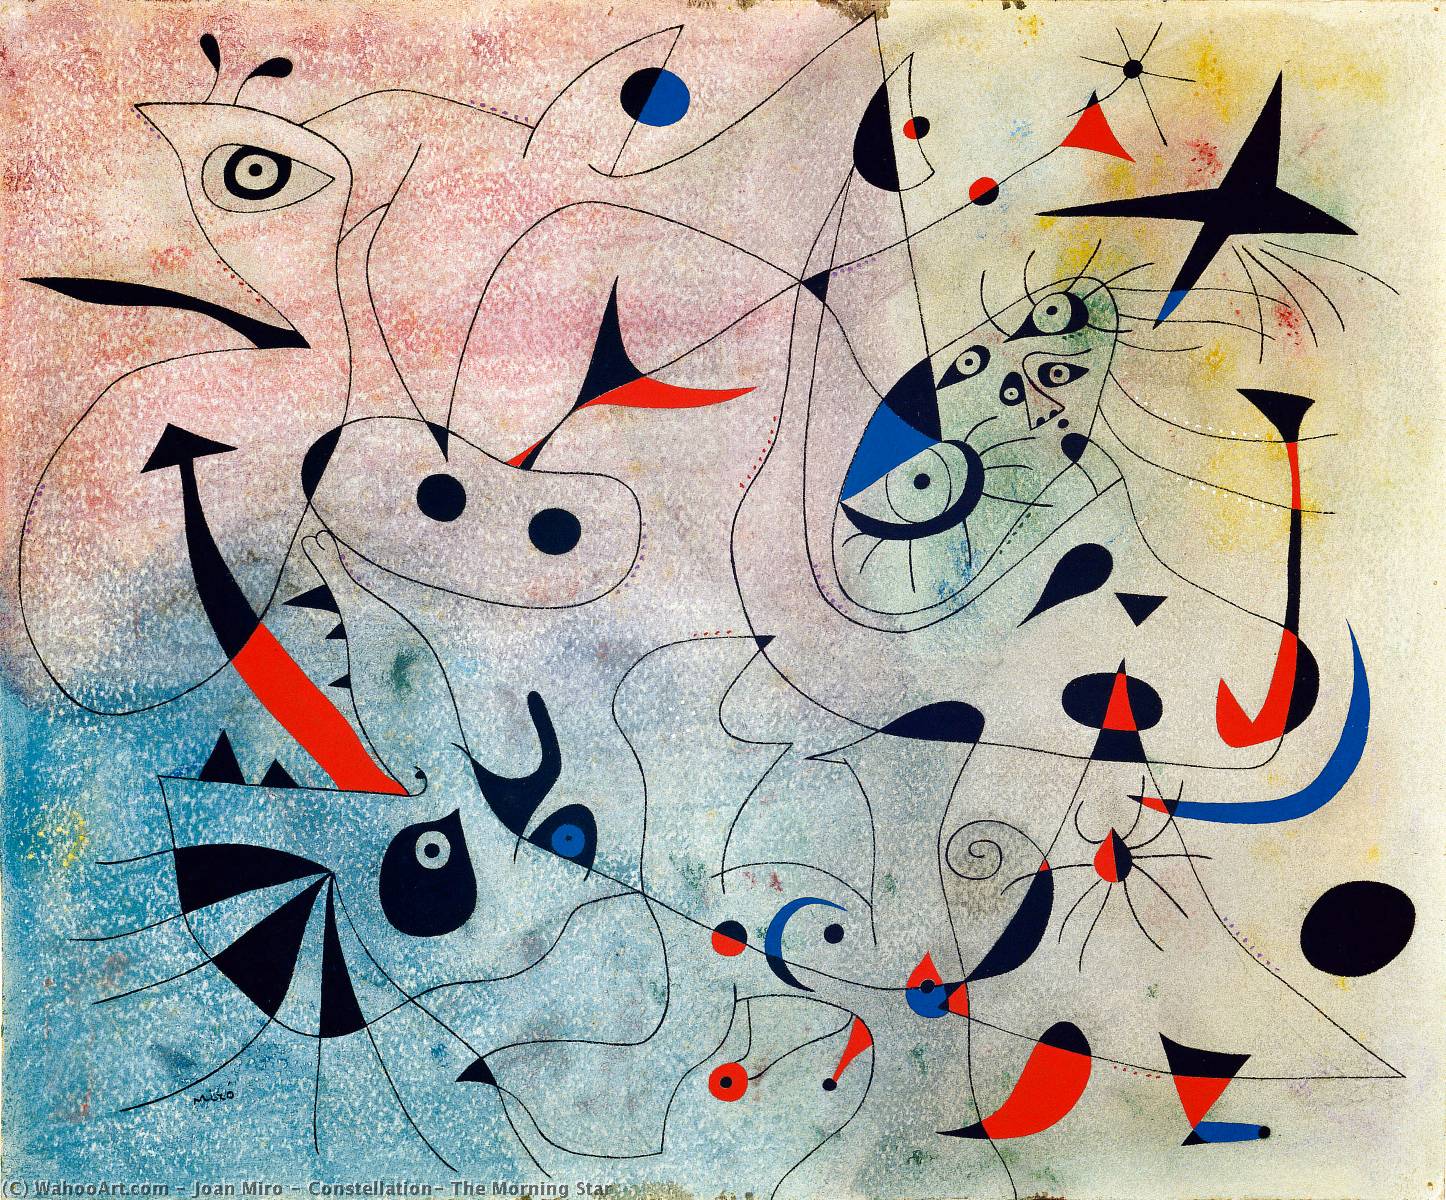 WikiOO.org - Encyclopedia of Fine Arts - Målning, konstverk Joan Miro - Constellation: The Morning Star